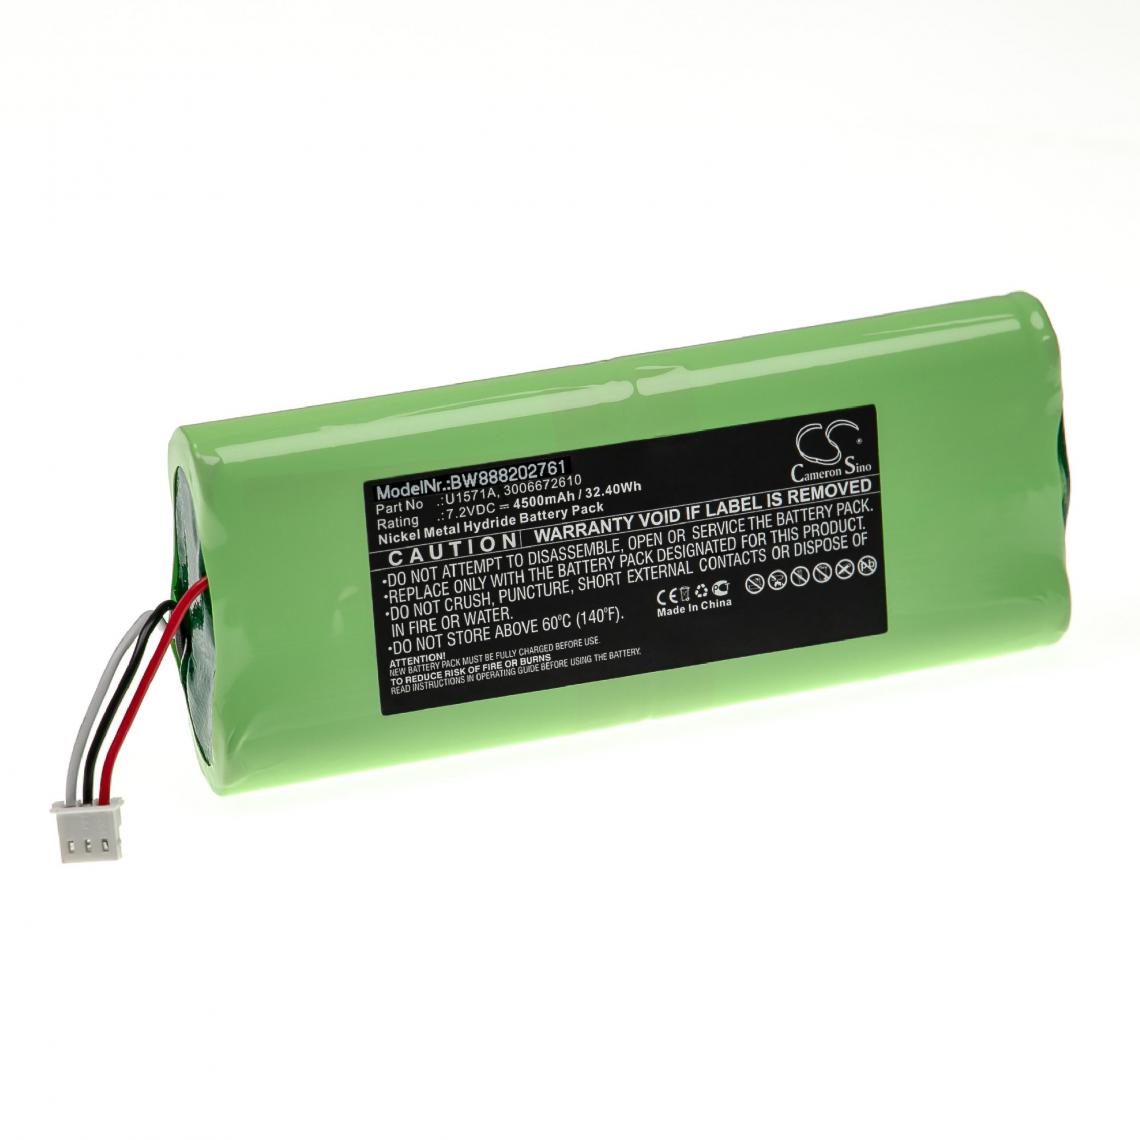 Vhbw - vhbw Batterie remplacement pour Keysight 3006672610, U1571A pour outil de mesure (4500mAh, 7,2V, NiMH) - Piles rechargeables